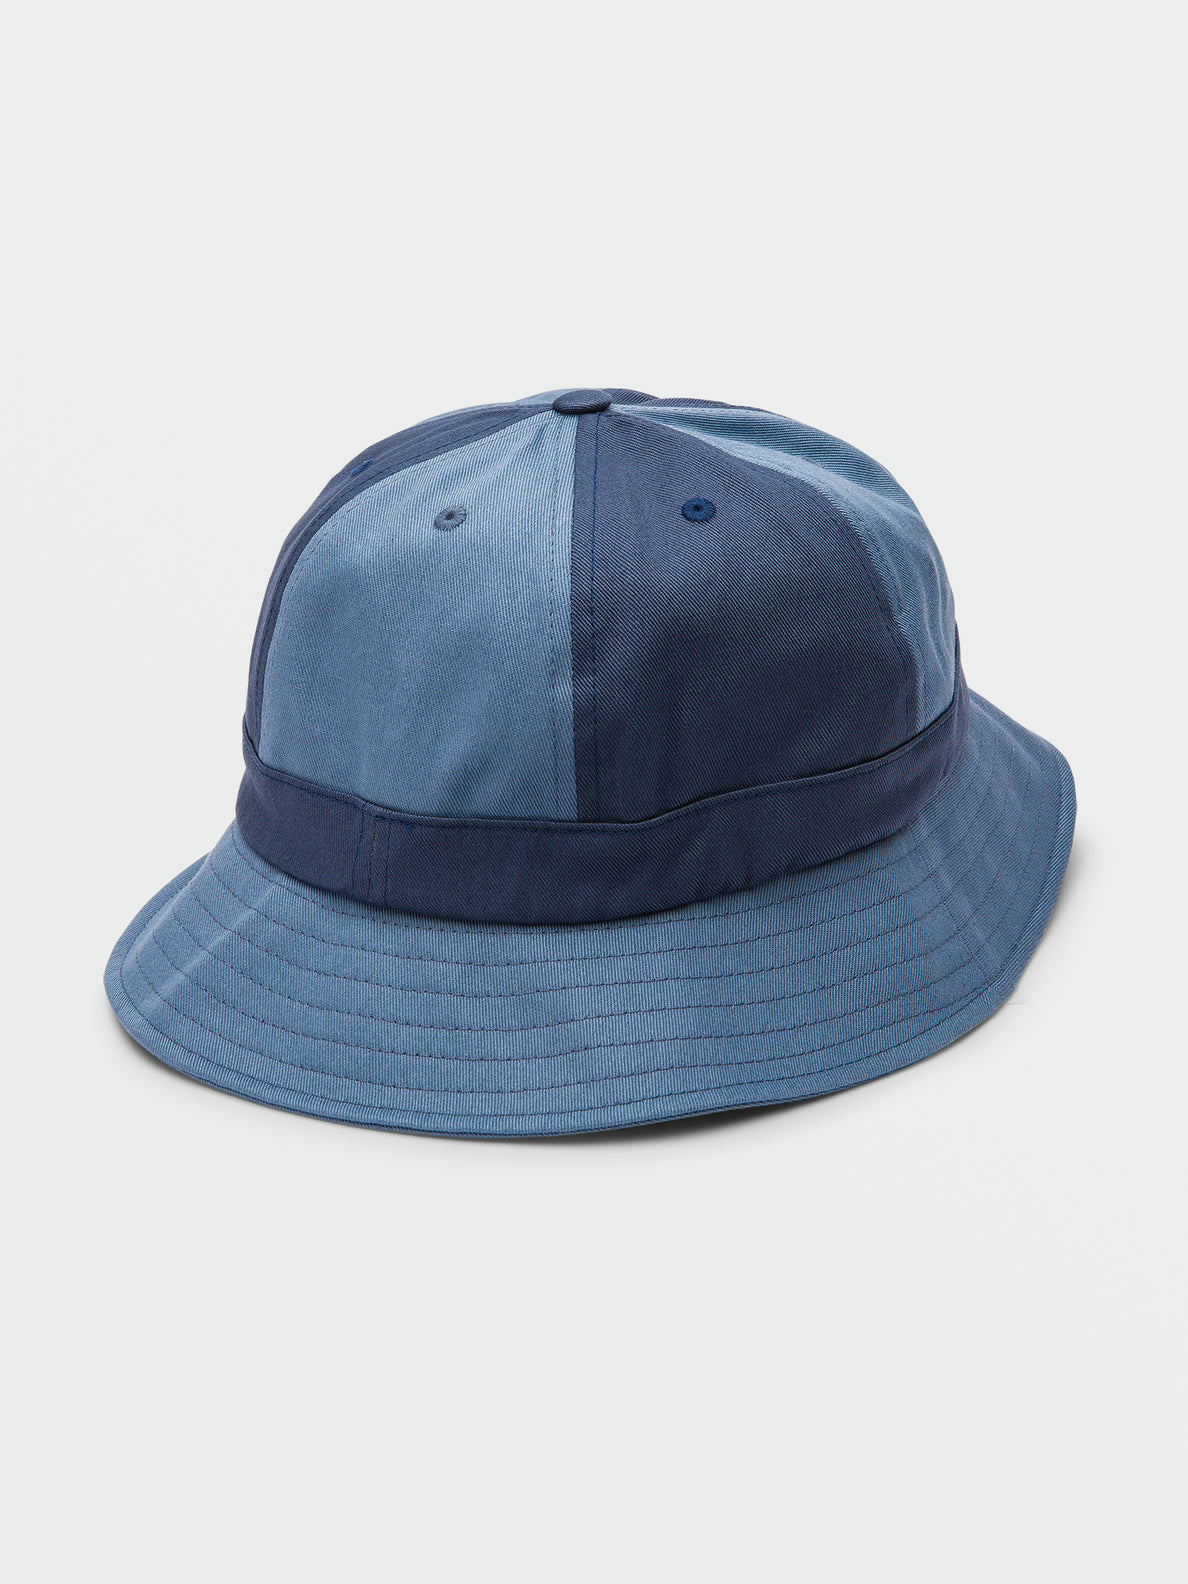 SWIRLEY BUCKET HAT - SLATE BLUE